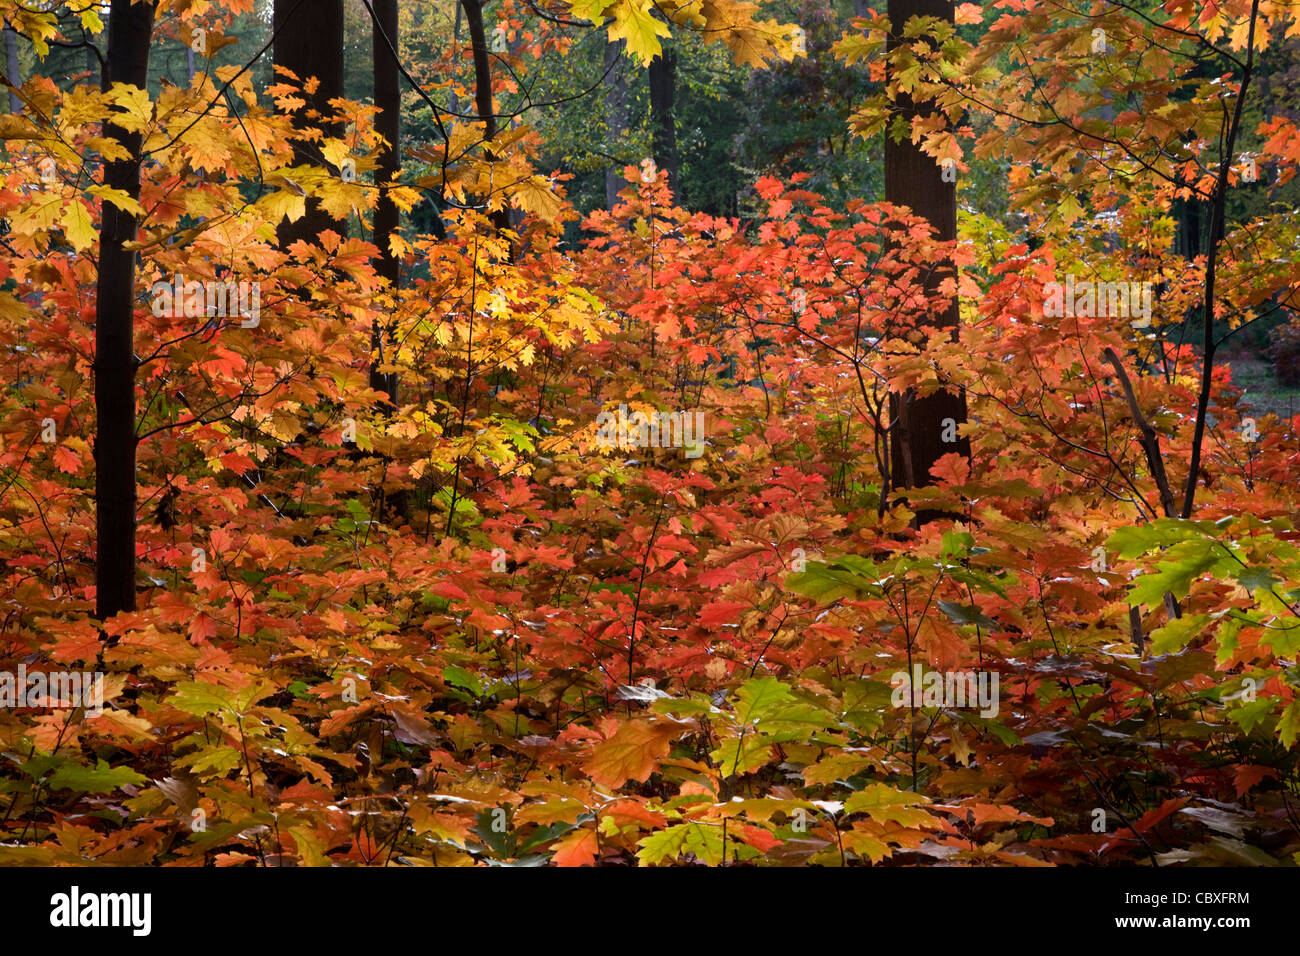 Northern red oak / chêne (Quercus rubra champion / Quercus borealis) arbres en forêt en automne, originaire d'Amérique du Nord Banque D'Images